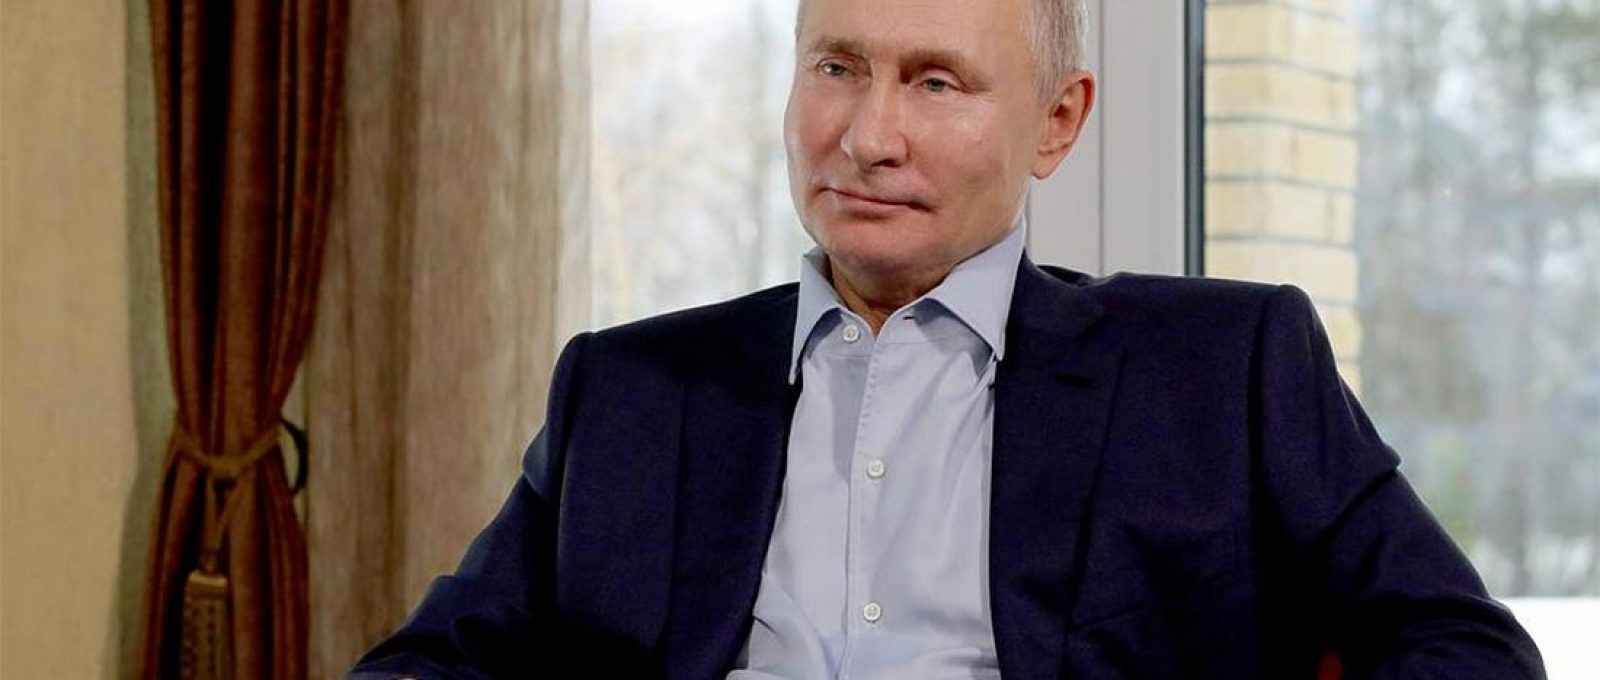 Vladimir Putin (Foto: Mikhail Klimentyev/Escritório de Informação e Imprensa Presidencial Russa/Tass).